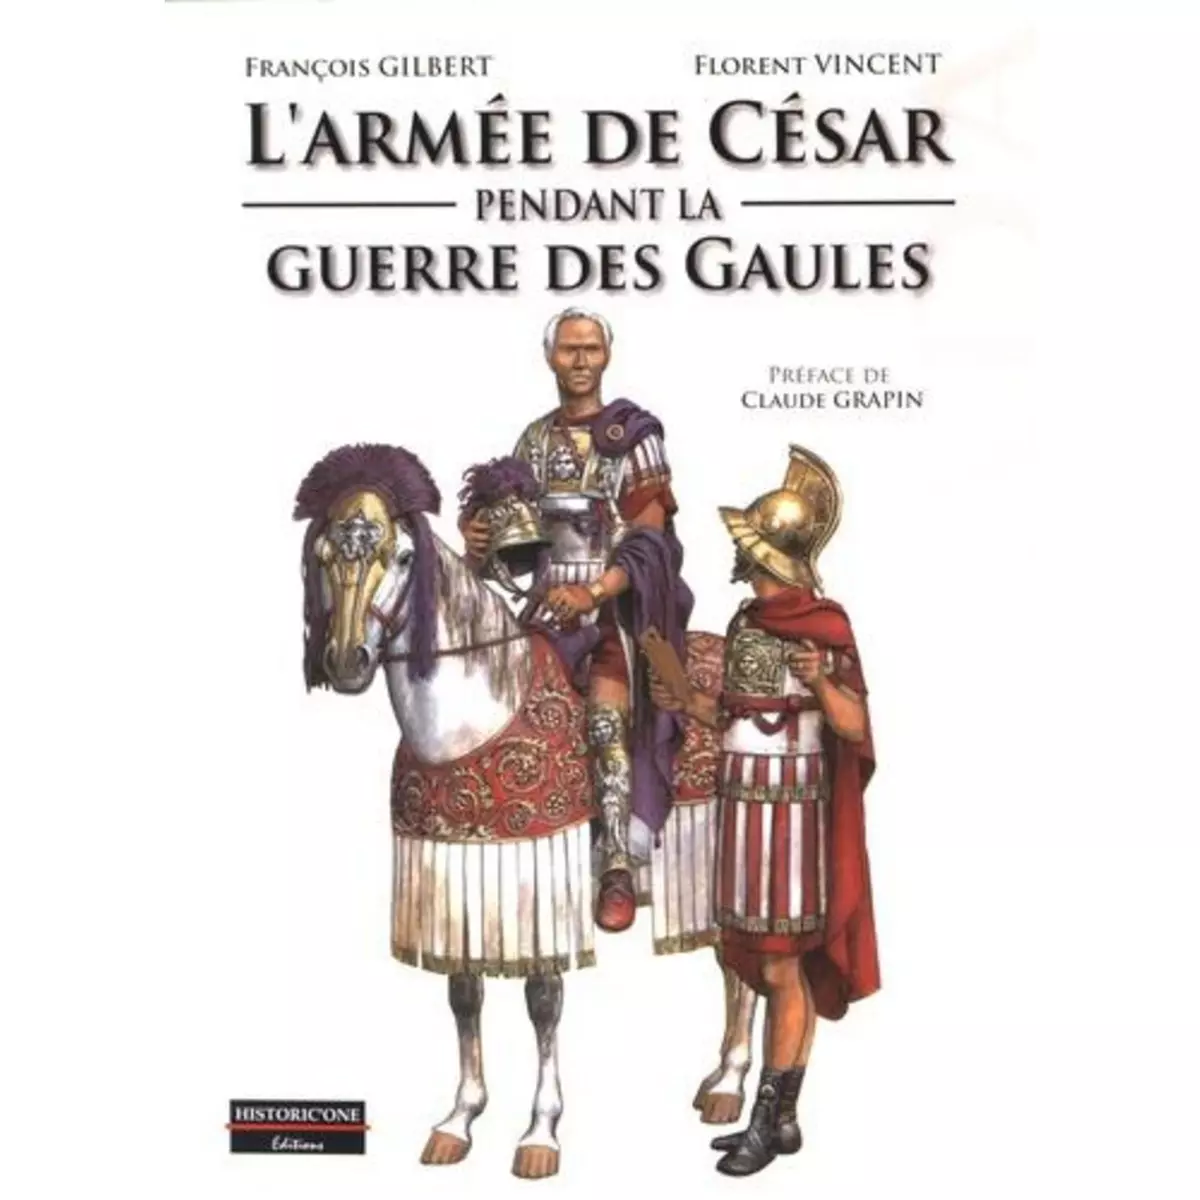  L'ARMEE DE CESAR PENDANT LA GUERRE DES GAULES, Gilbert François